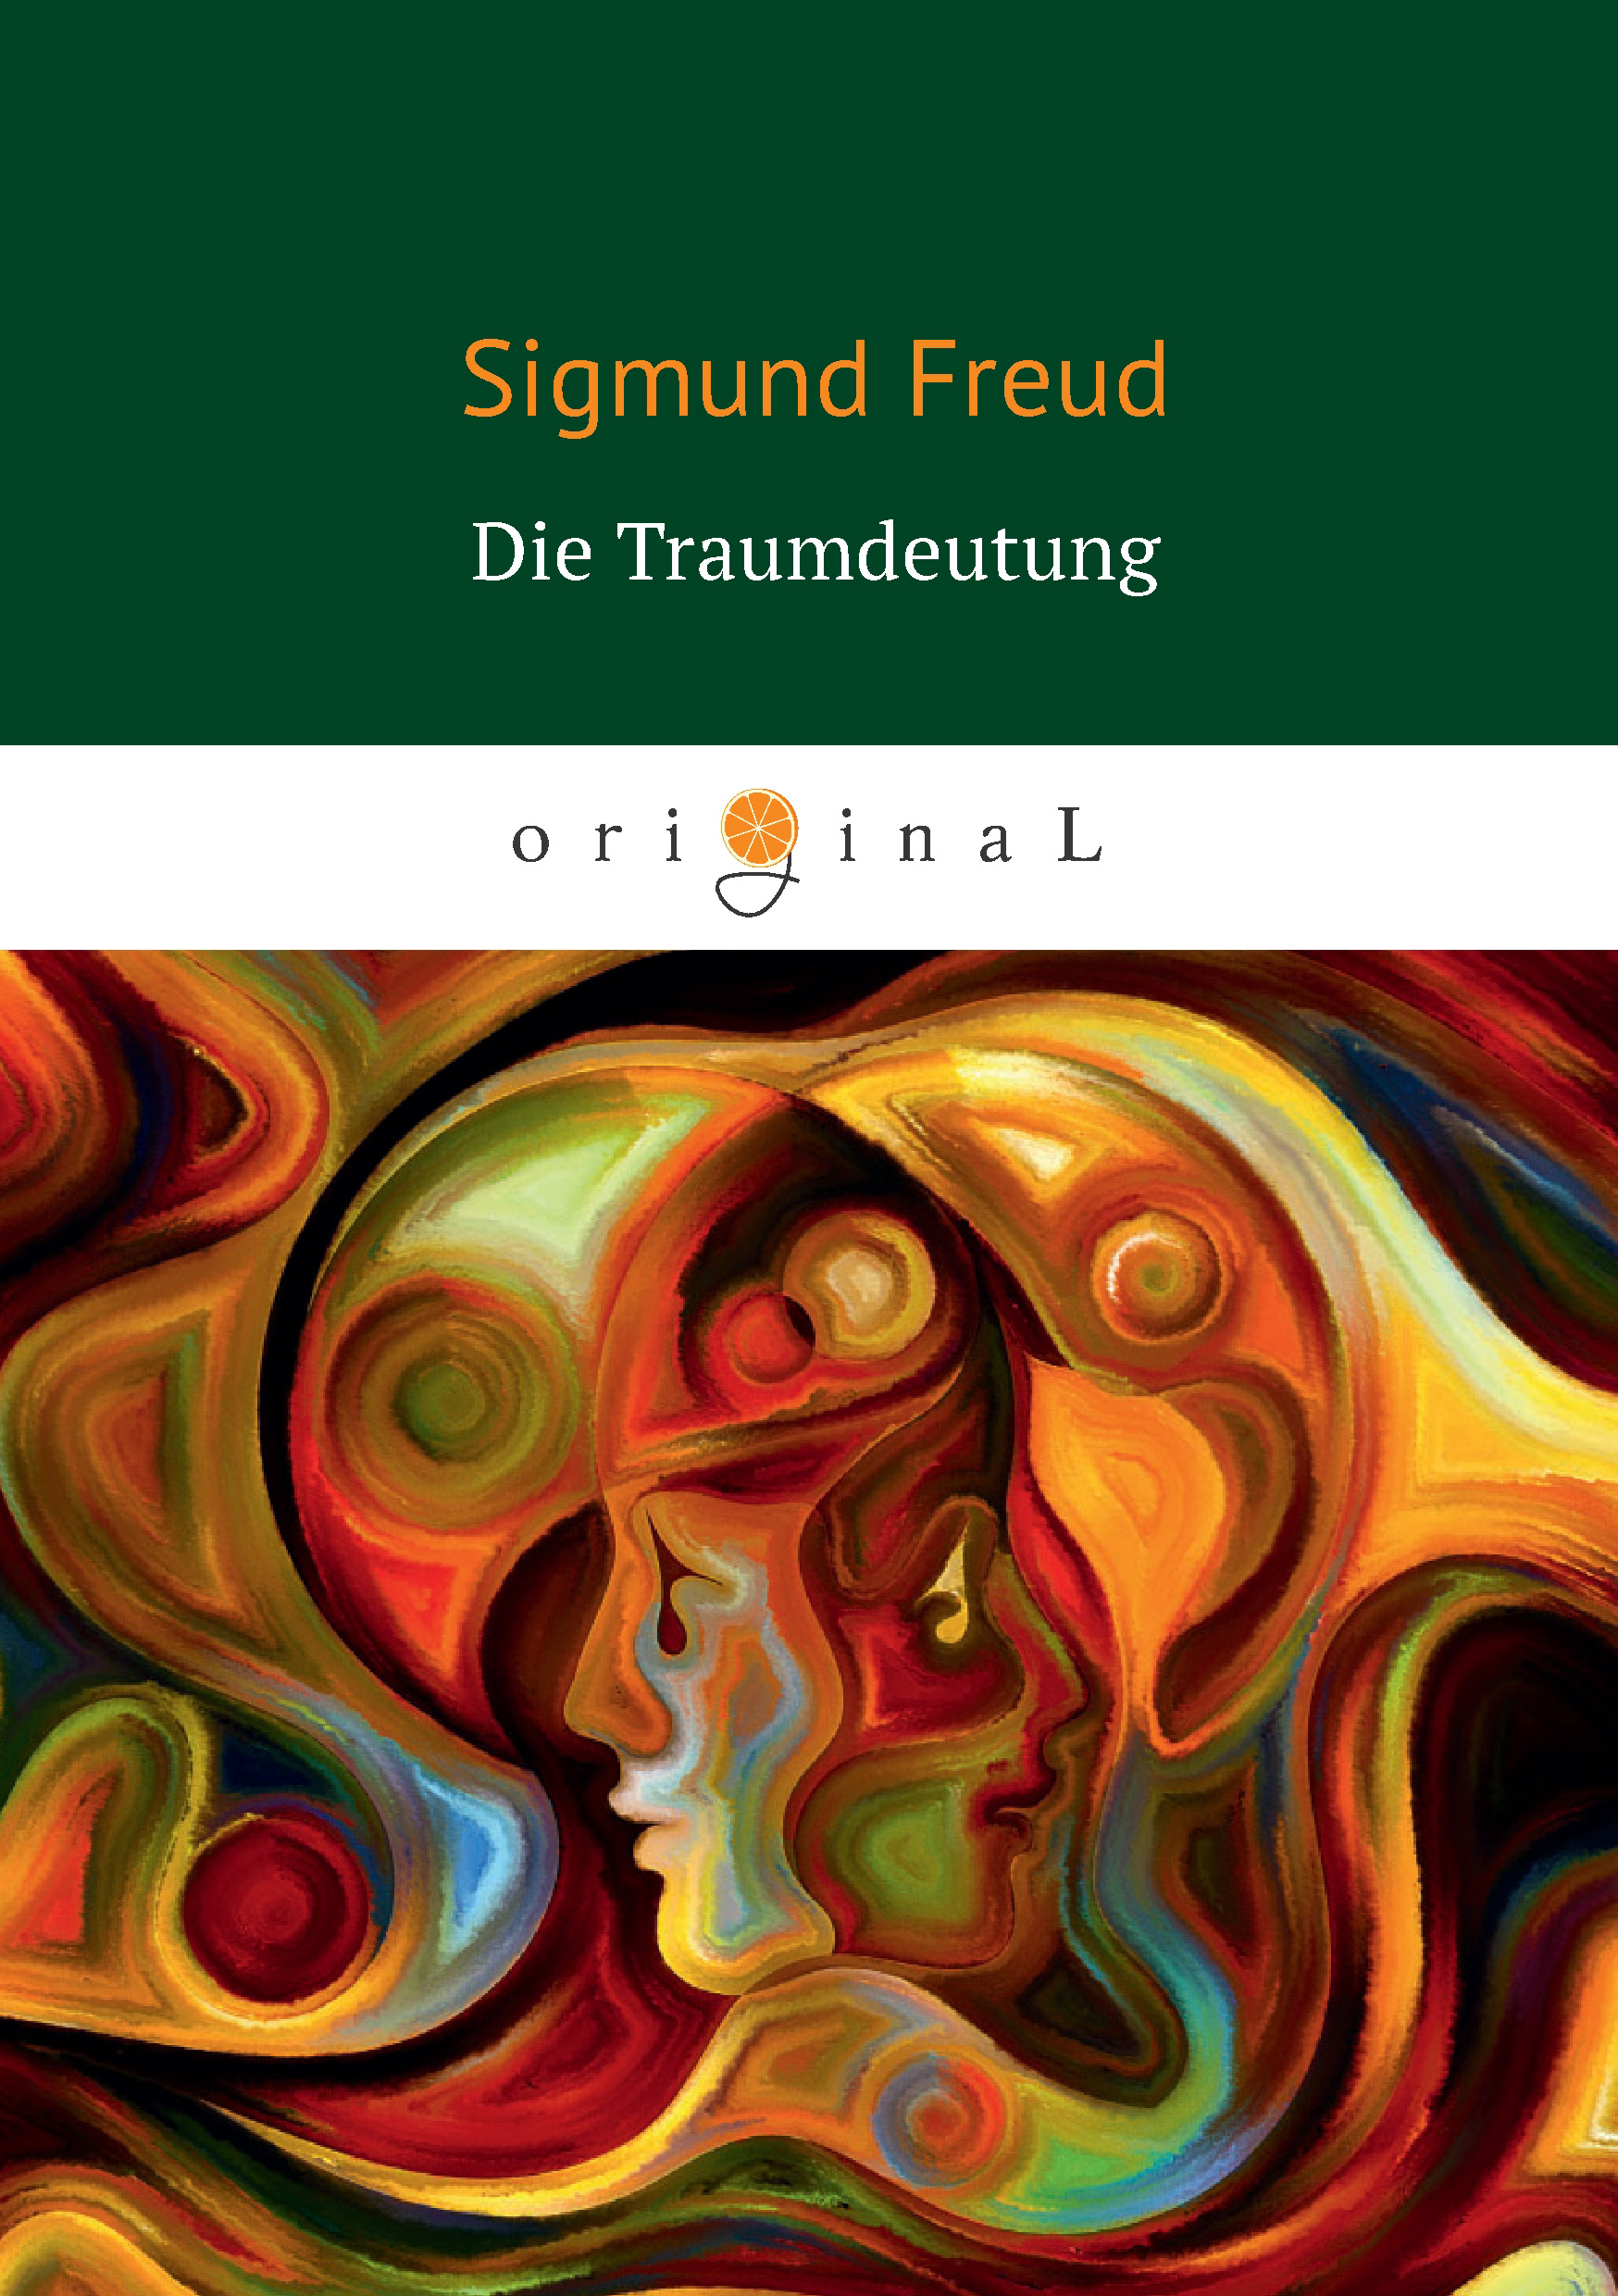 Книга Die Traumdeutung из серии , созданная Зигмунд Фрейд, может относится к жанру Классики психологии, Психотерапия и консультирование. Стоимость электронной книги Die Traumdeutung с идентификатором 33848146 составляет 299.00 руб.